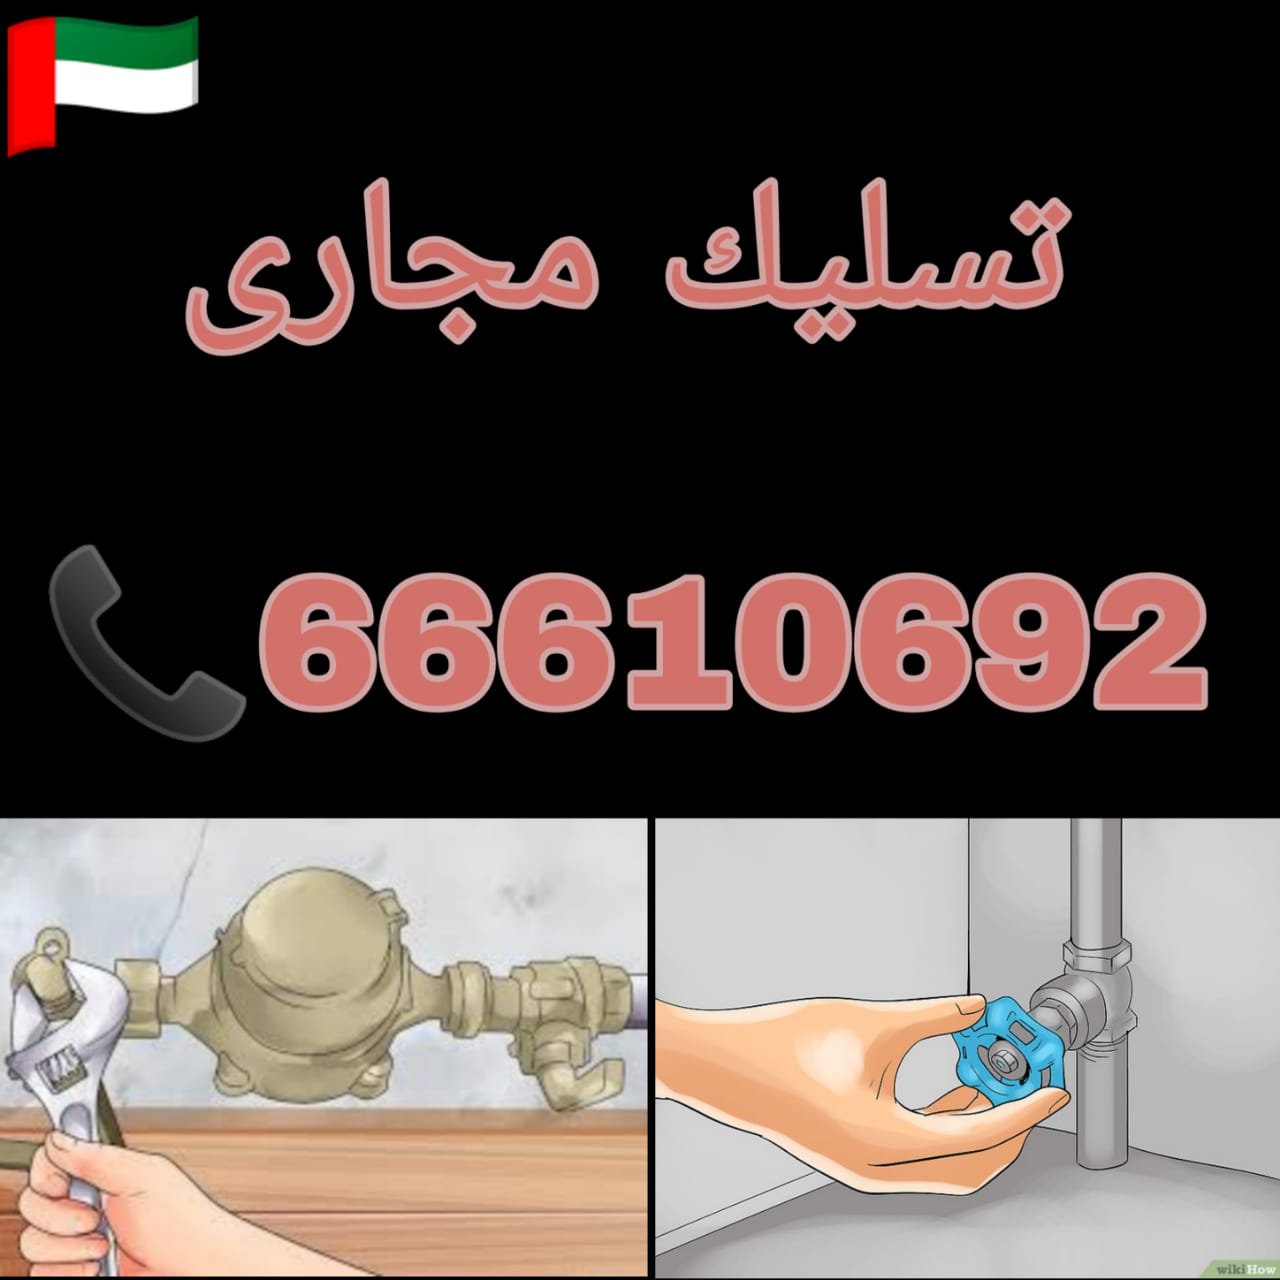 تسليك مجاري سعد العبد الله / 66610692 / صيانة وتركيب فني صحي الكويت